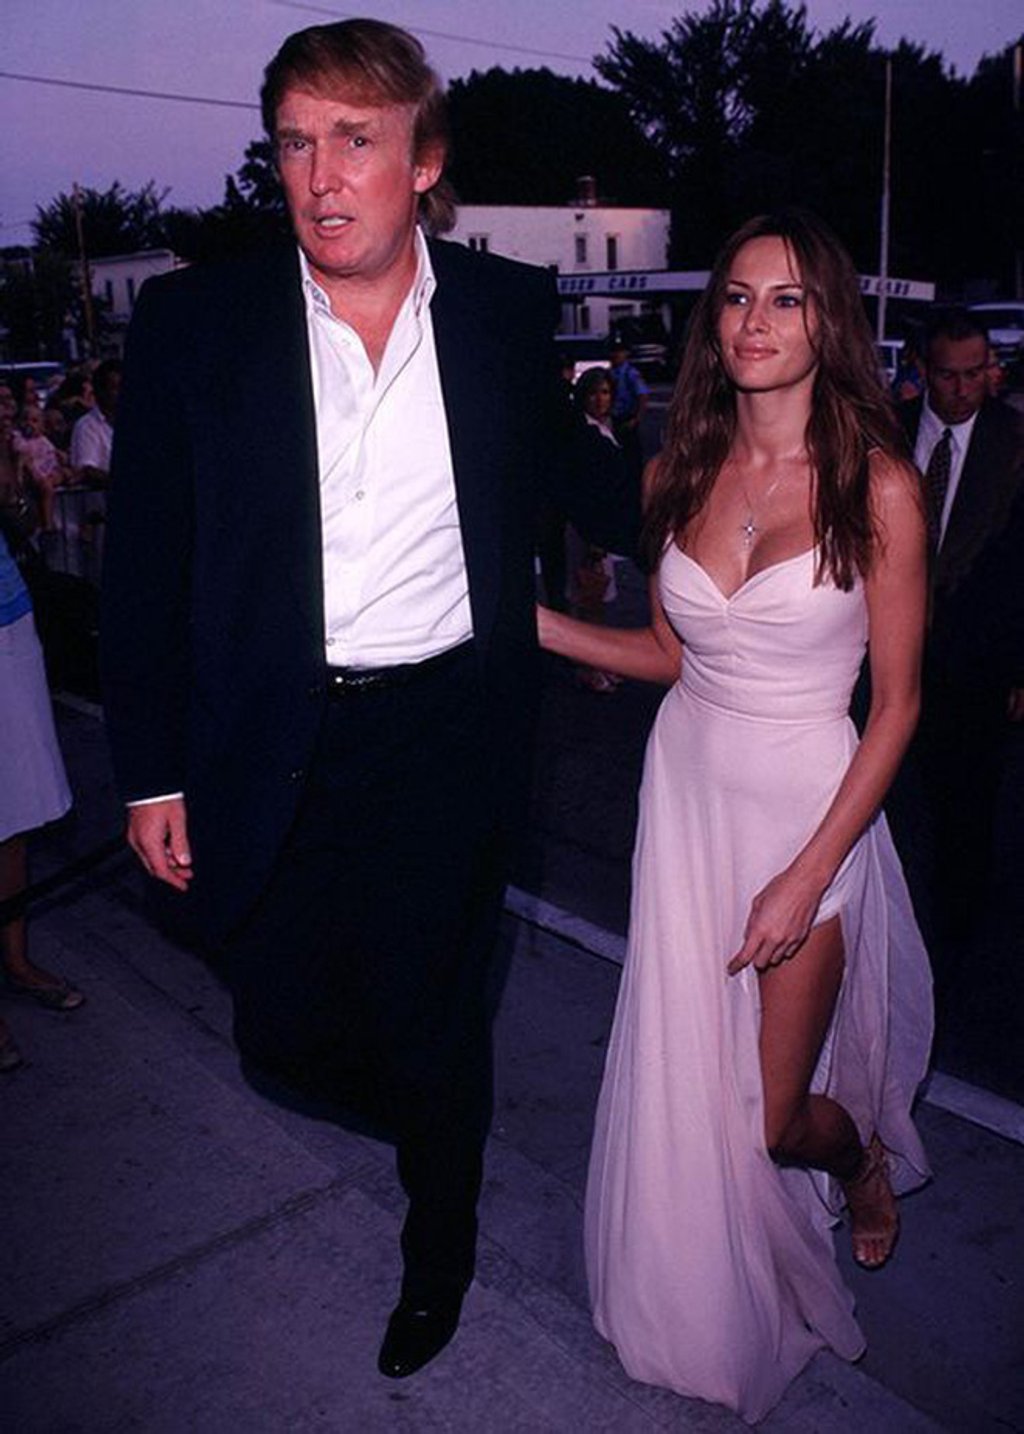 Trong suốt thập niên 90, trang phục bà Melania Trump ưa thích nhất là đầm satin, voan và mọi chất liệu phô trương vòng 1 của mình. Nhưng cũng vì chịu khó khoe body mà bà mang tiếng chỉ là bóng hồng quanh quẩn bên đại gia, không có khí chất phu nhân gì